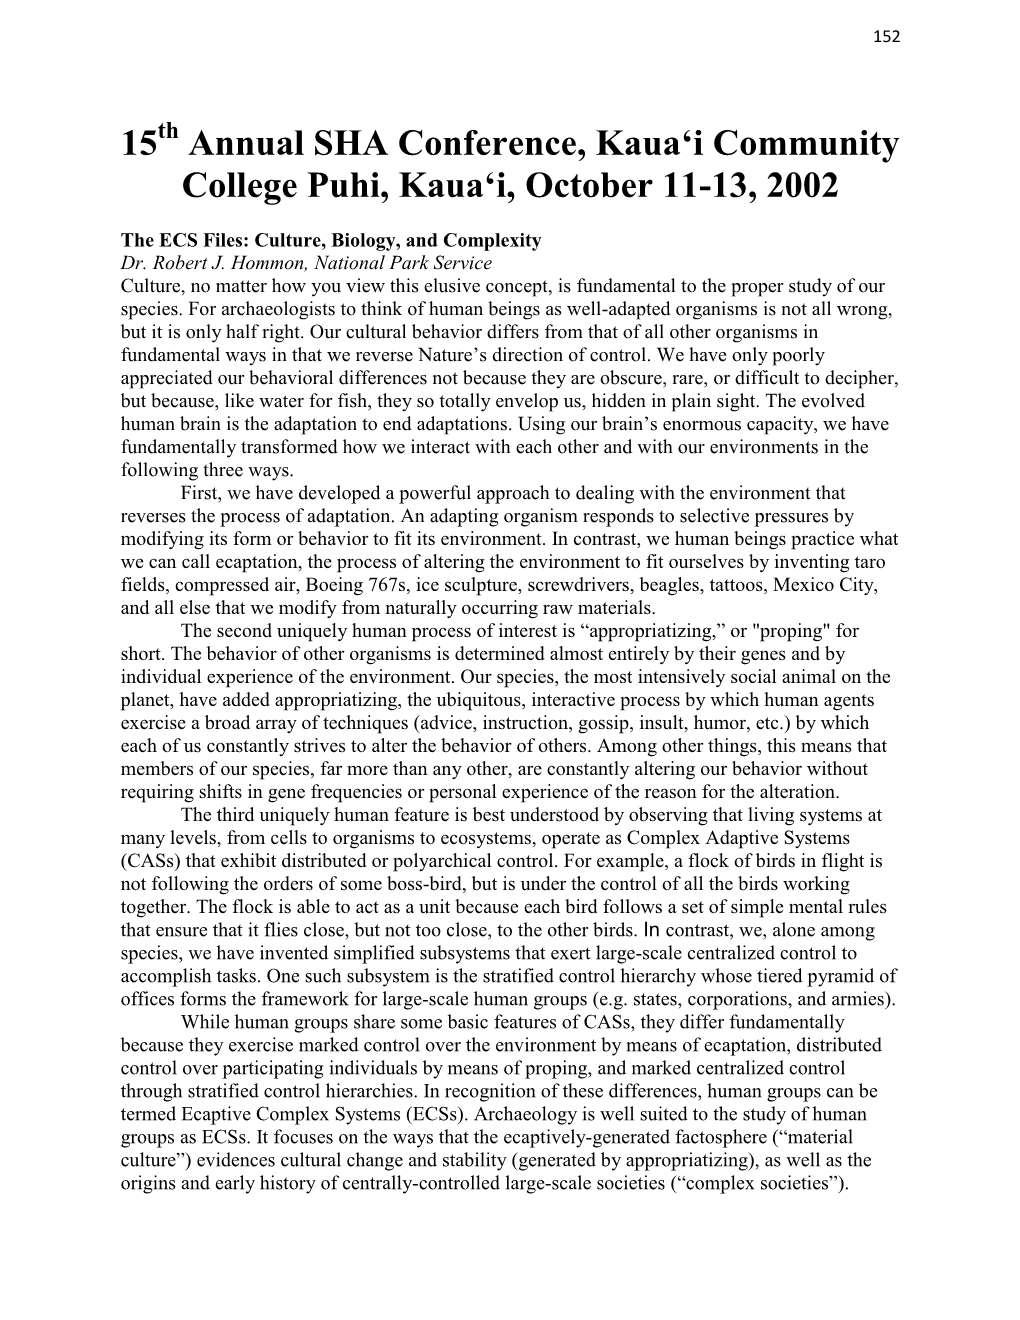 Annual SHA Conference, Kauaʻi Community College Puhi, Kauaʻi, October 11-13, 2002